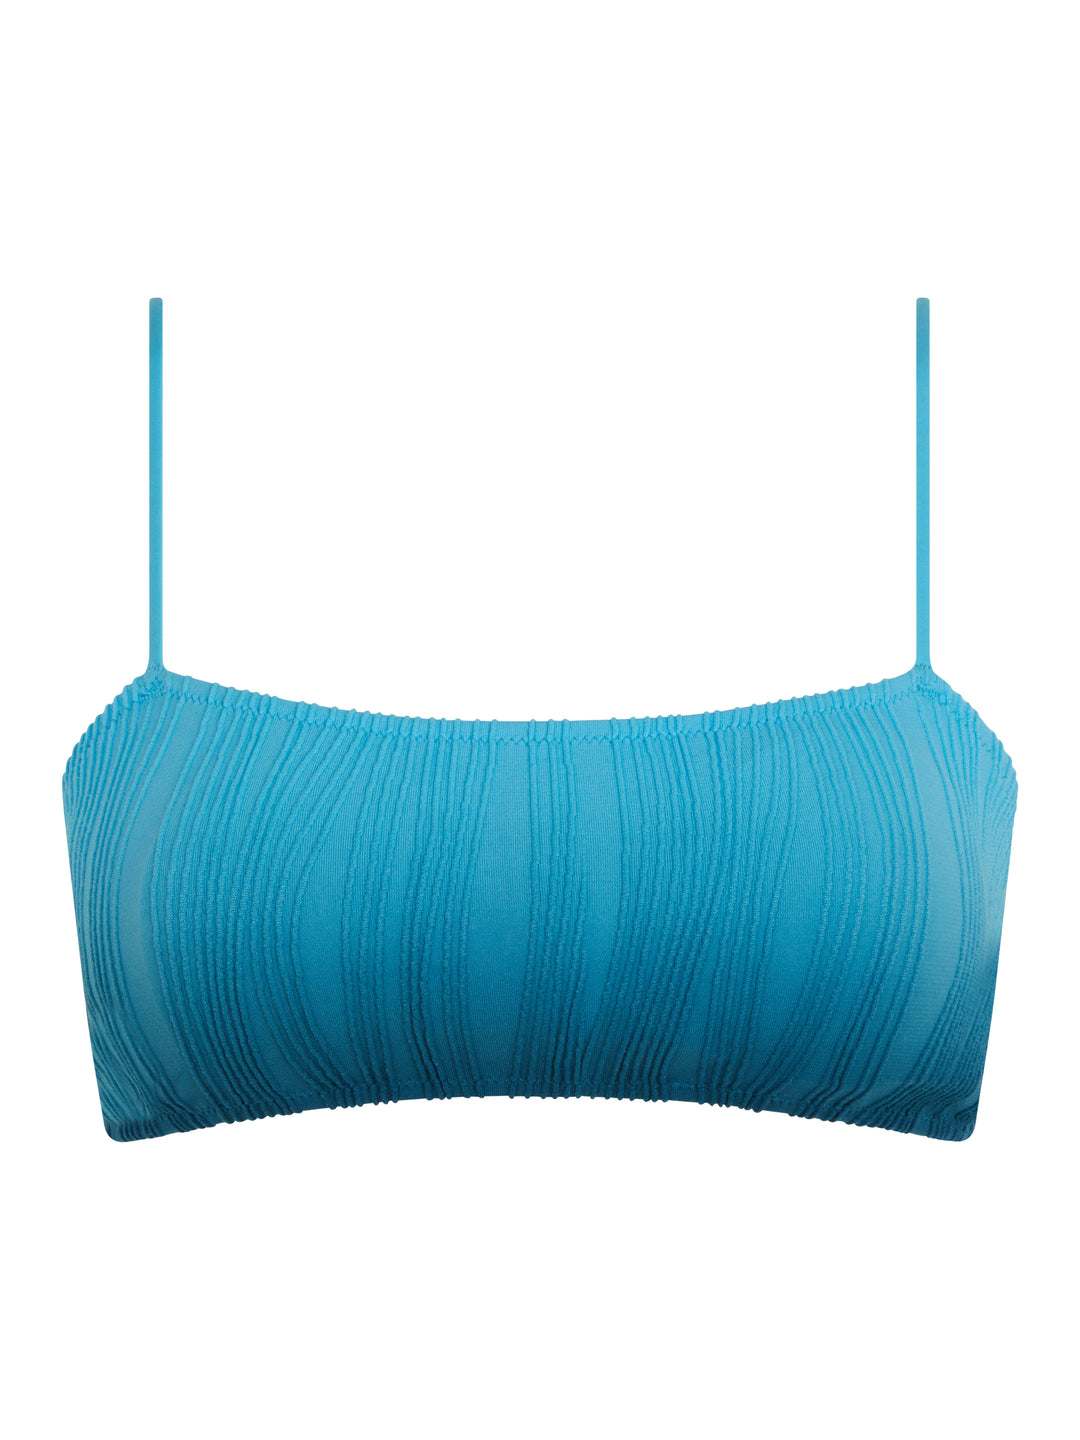 Chantelle Trajes de baño - Traje de baño talla única Sujetador tipo camiseta sin aros Tie & Dye azul